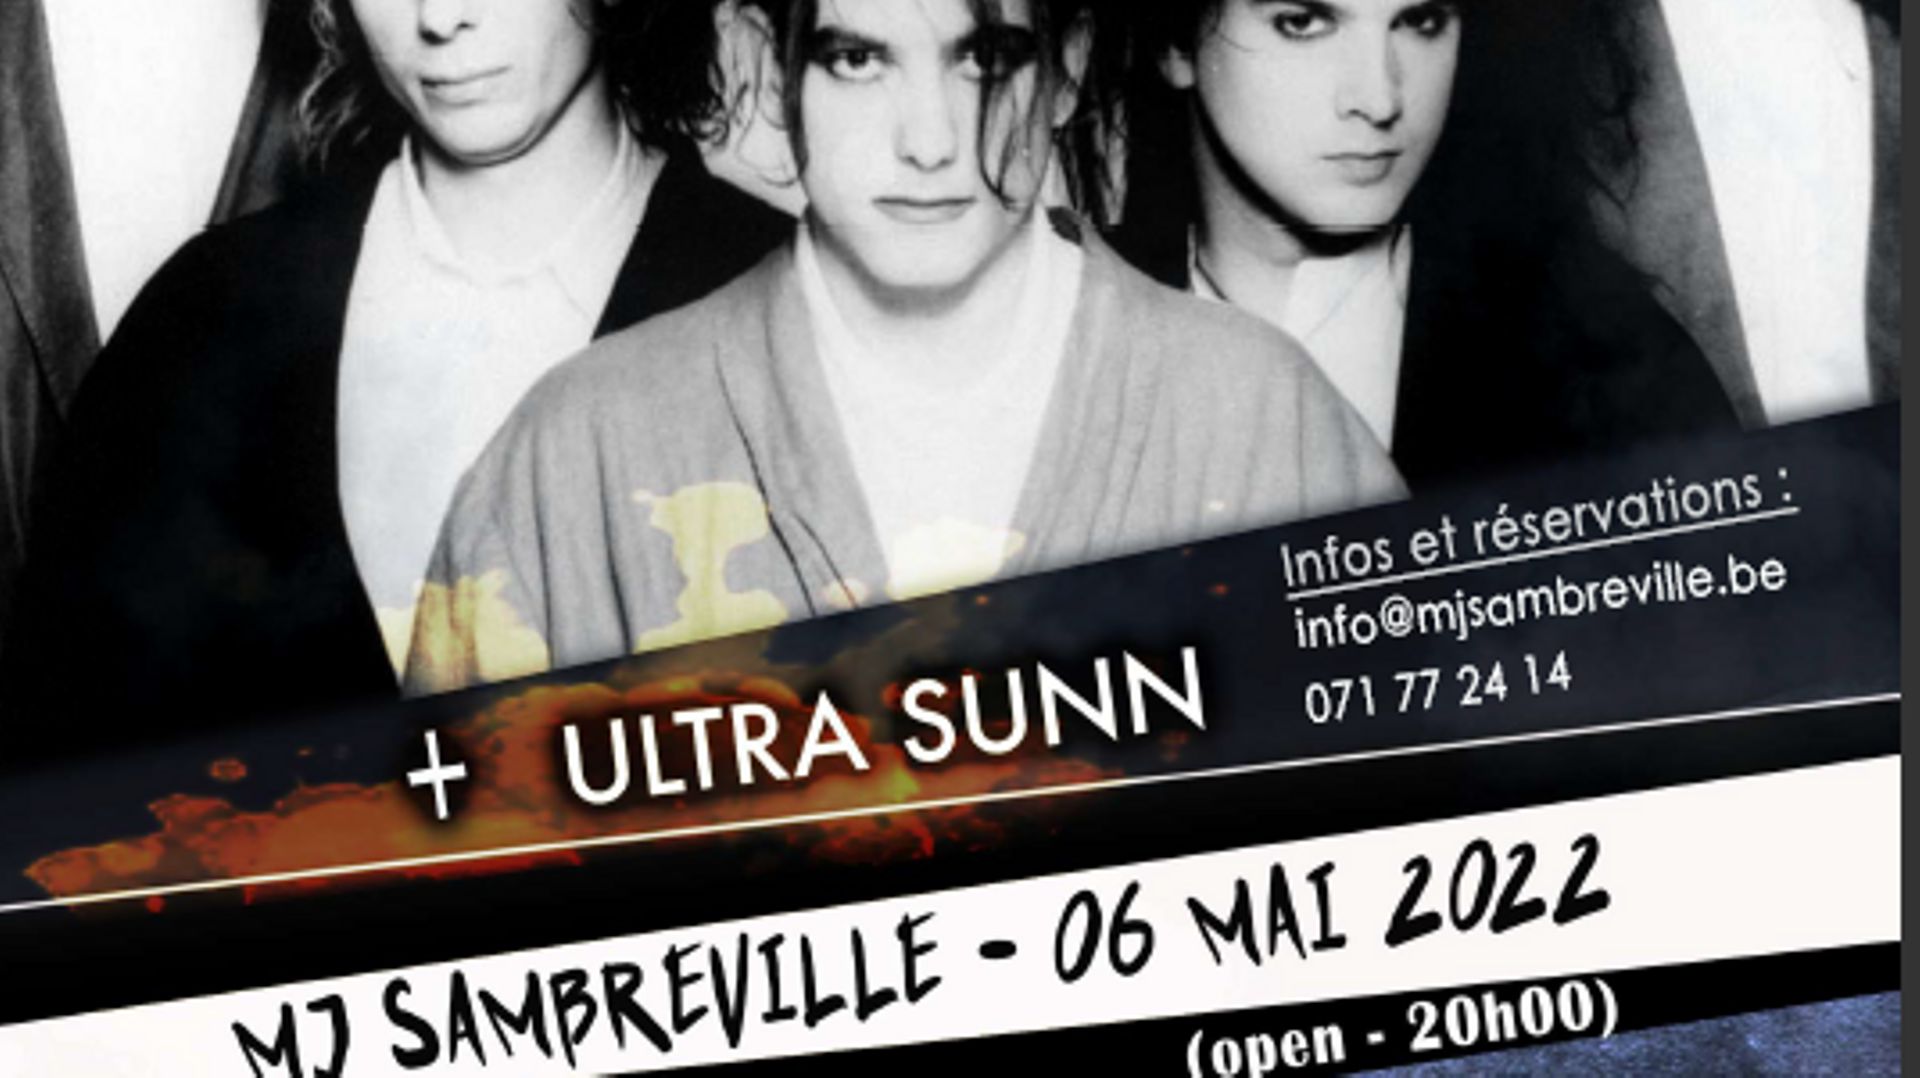 Concert de Curiosity (tribute de The Cure) et du groupe bruxellois Ultra Sunn.